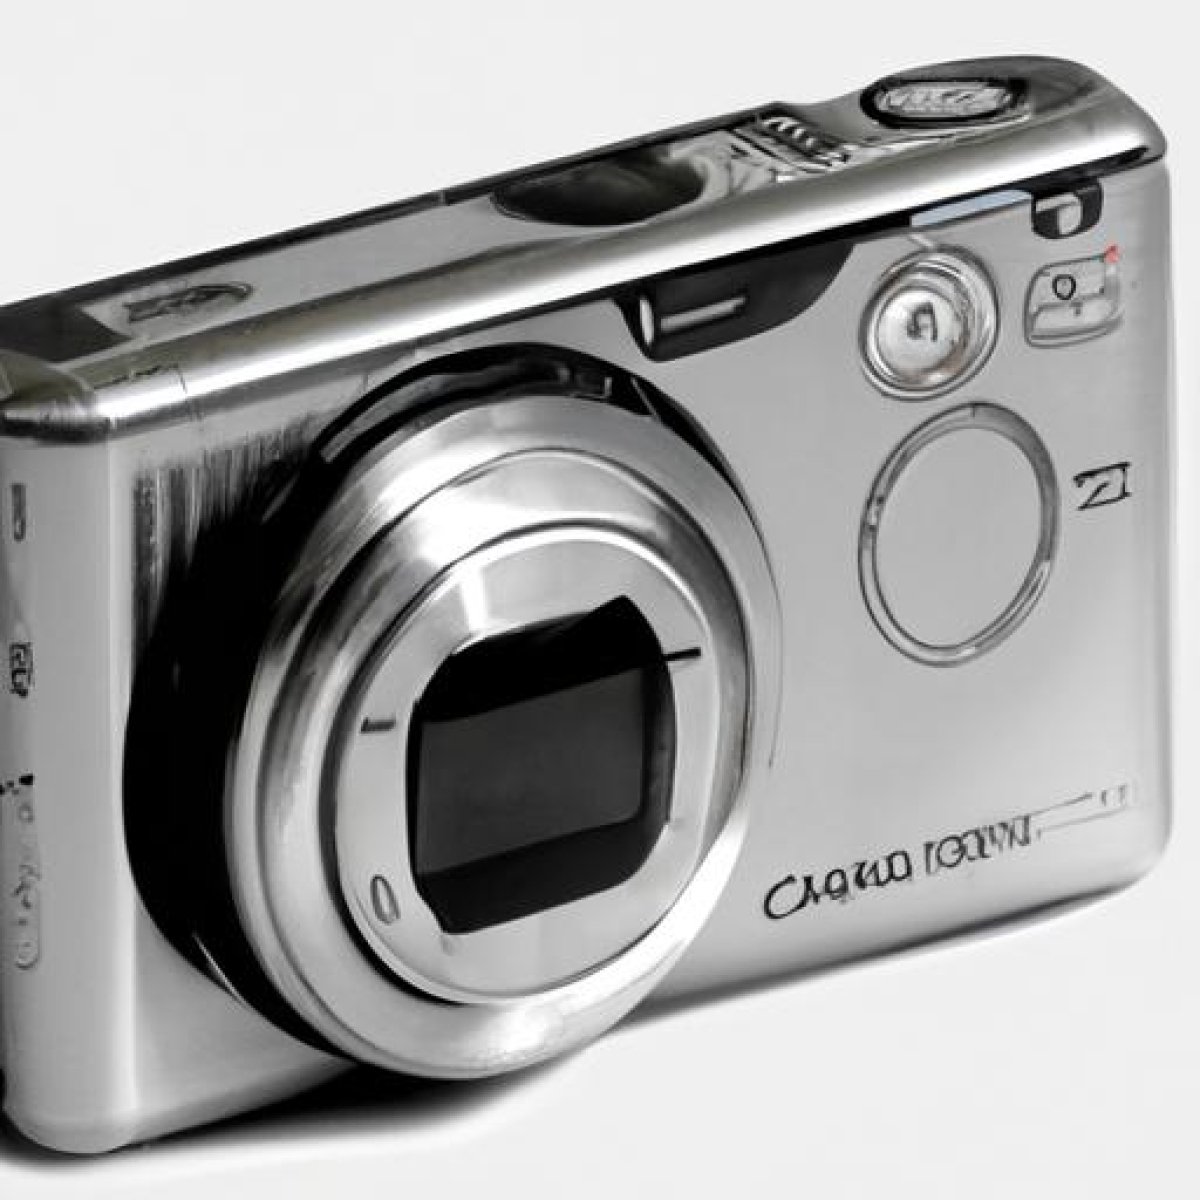 Sony cyber-shot dsc-t700 digital camera